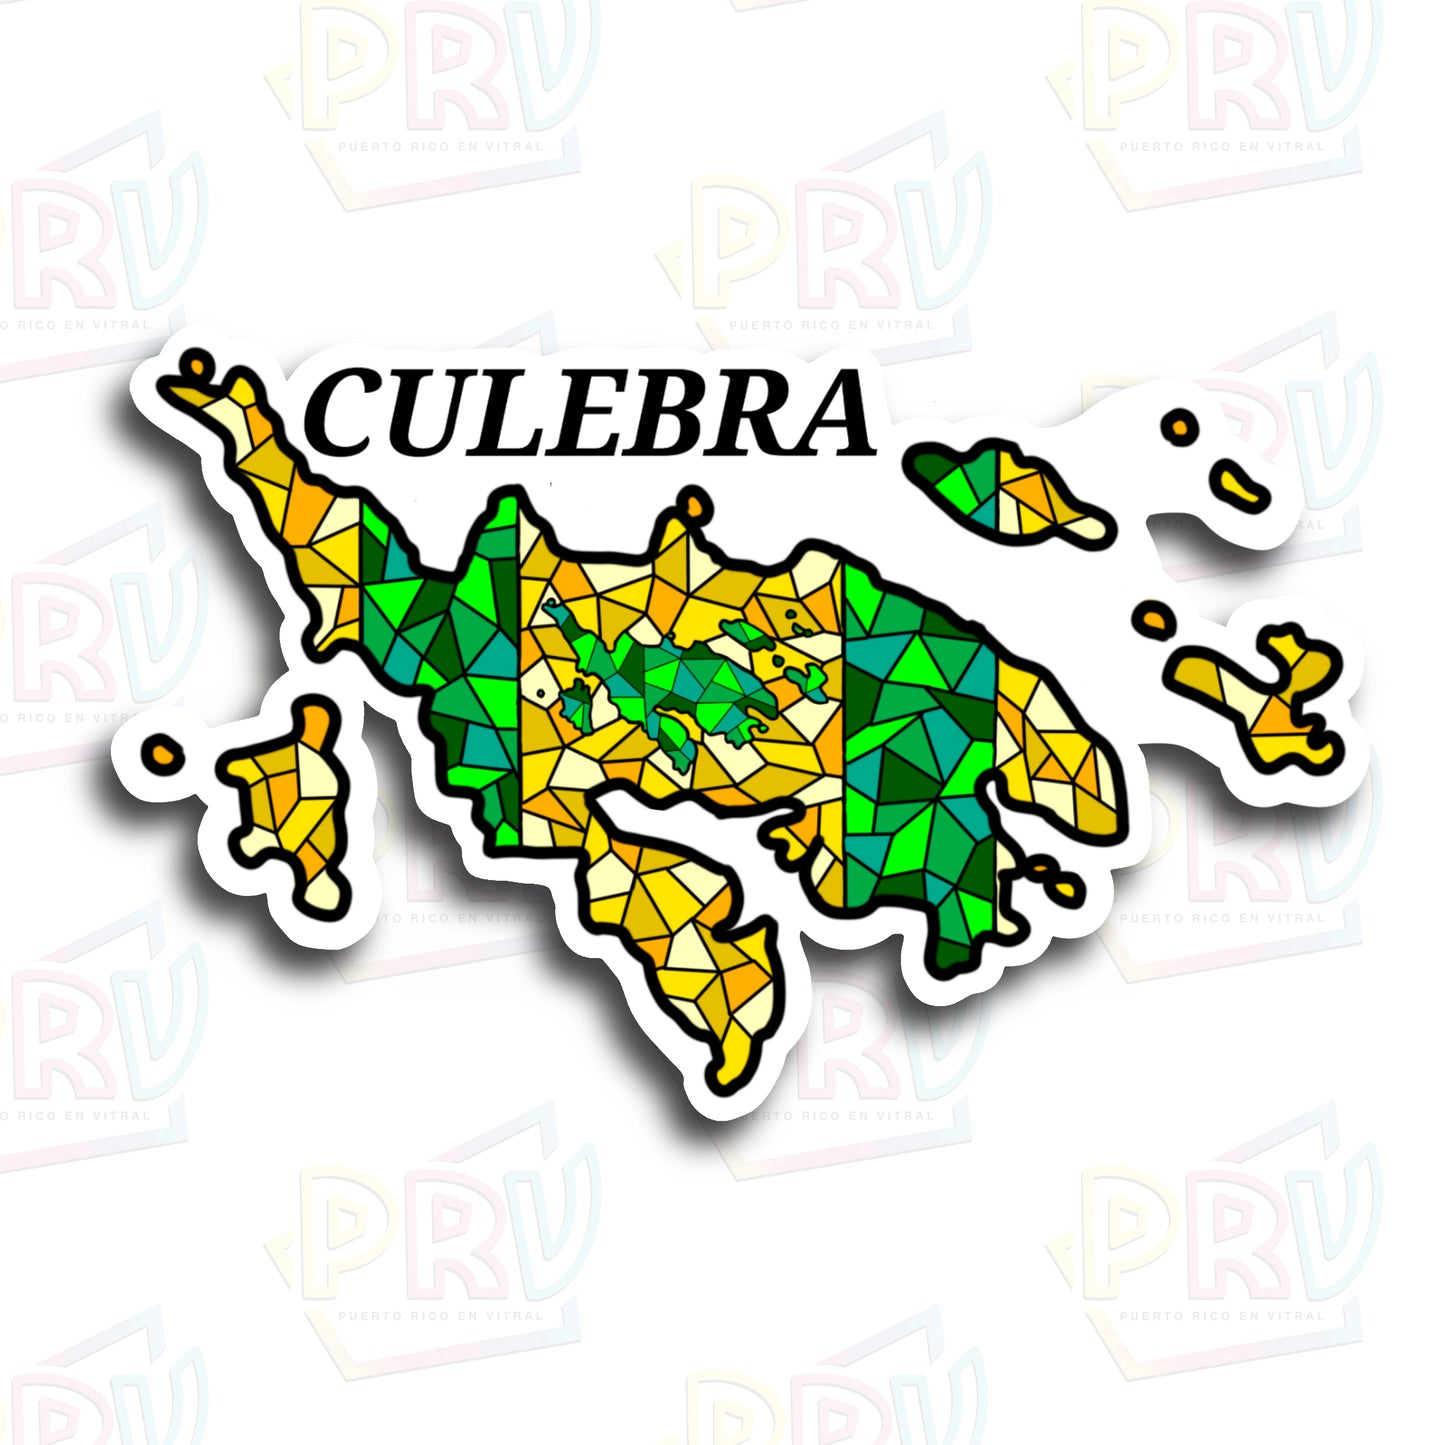 Culebra PR (Sticker)